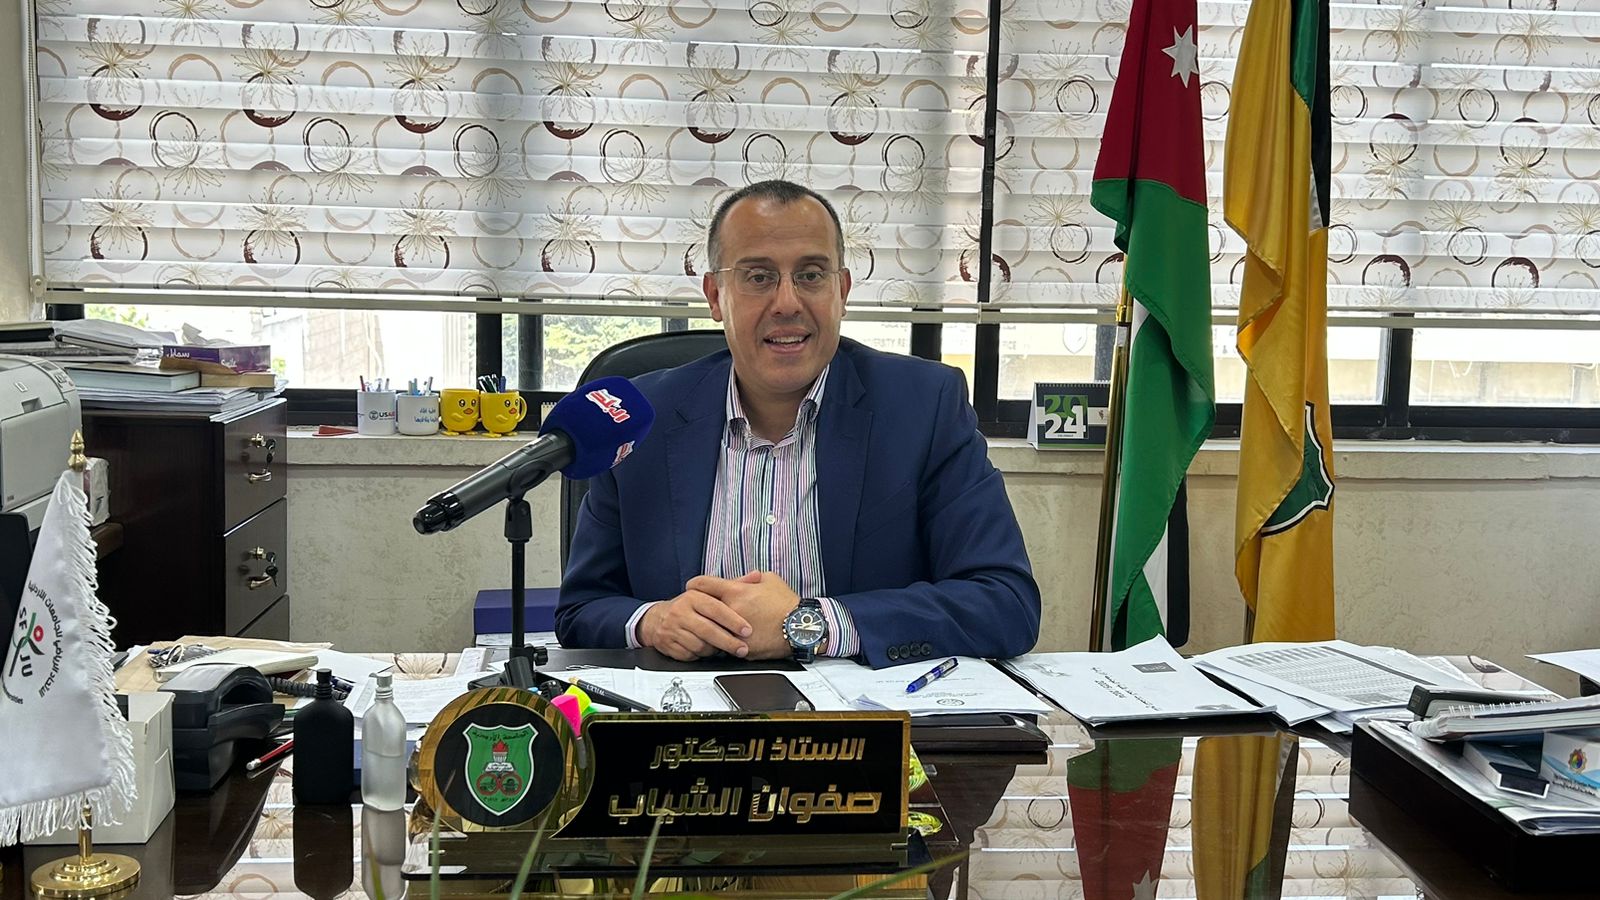 10 اسئلة عن انتخابات الأردنية يجيب عليها الدكتور  الشياب  بكل صراحة .